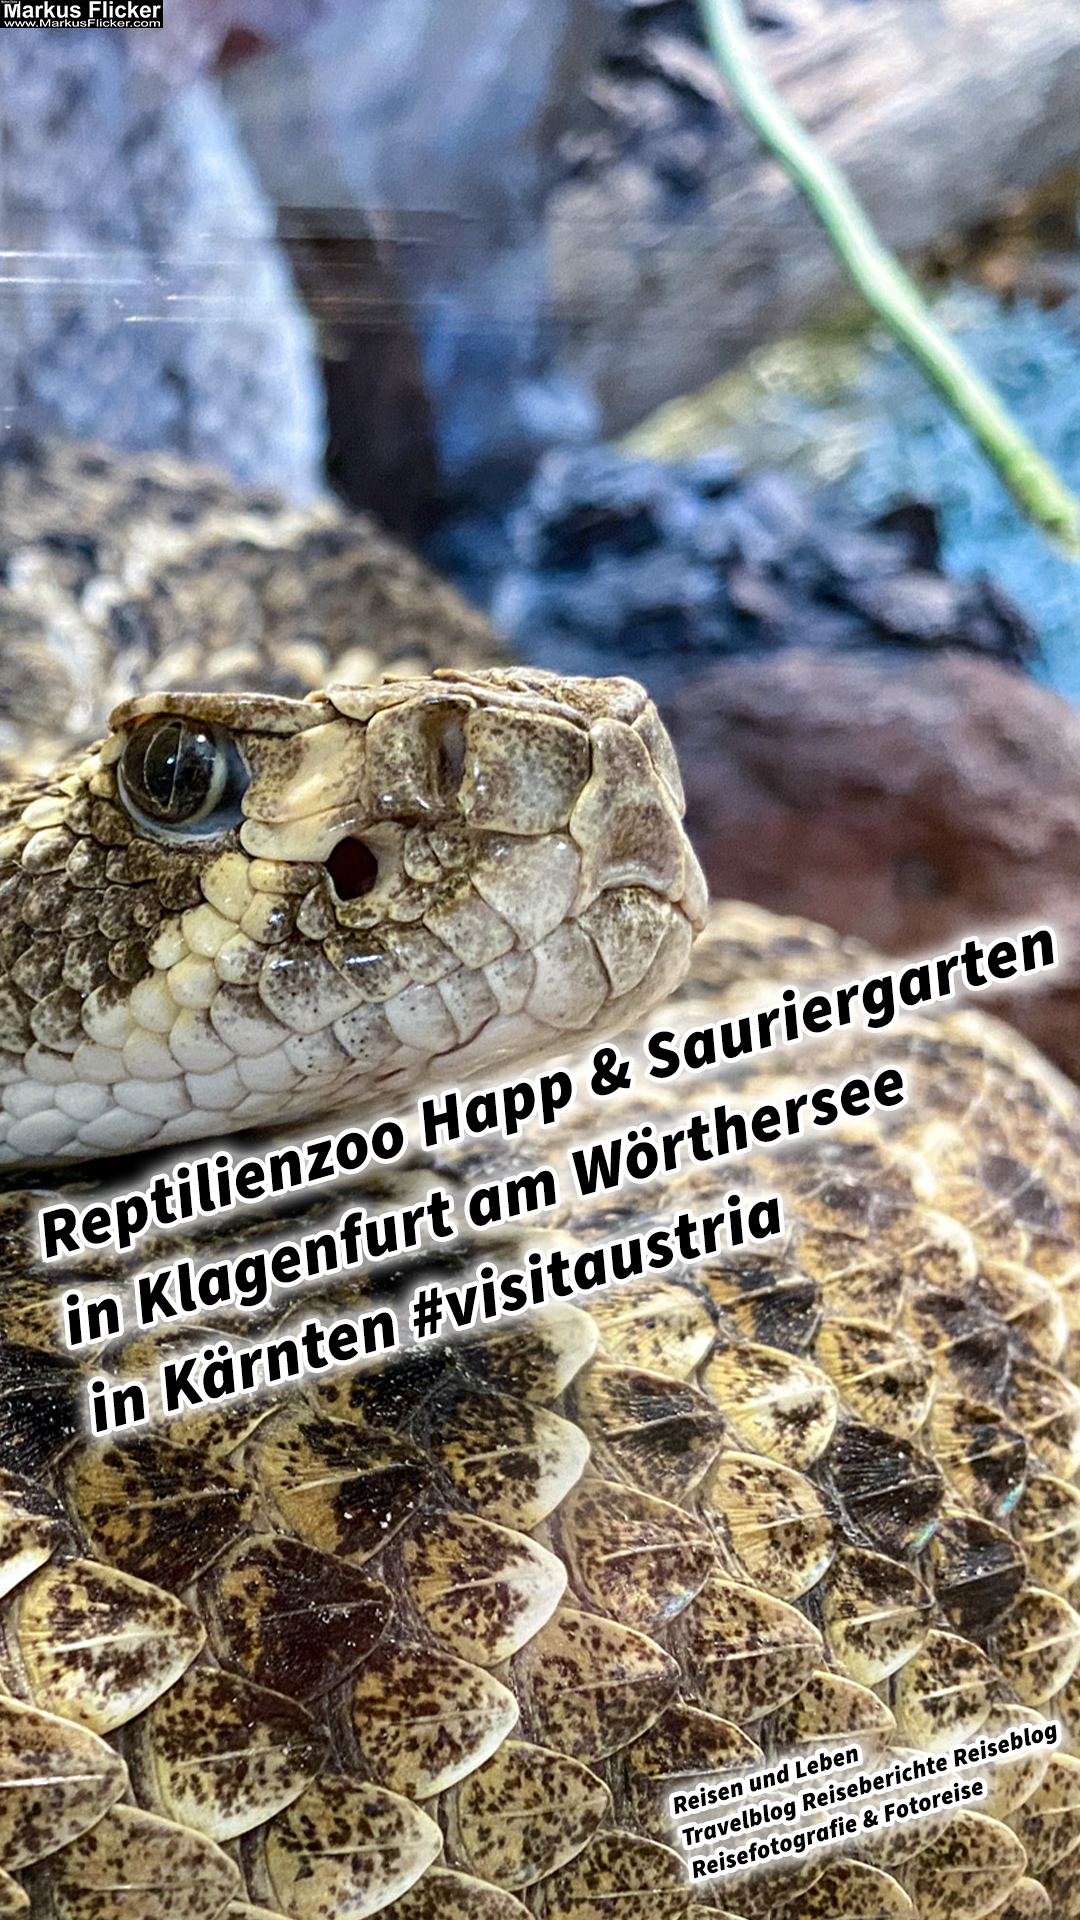 Reptilienzoo Happ & Sauriergarten in Klagenfurt am Wörthersee in Kärnten #visitaustria